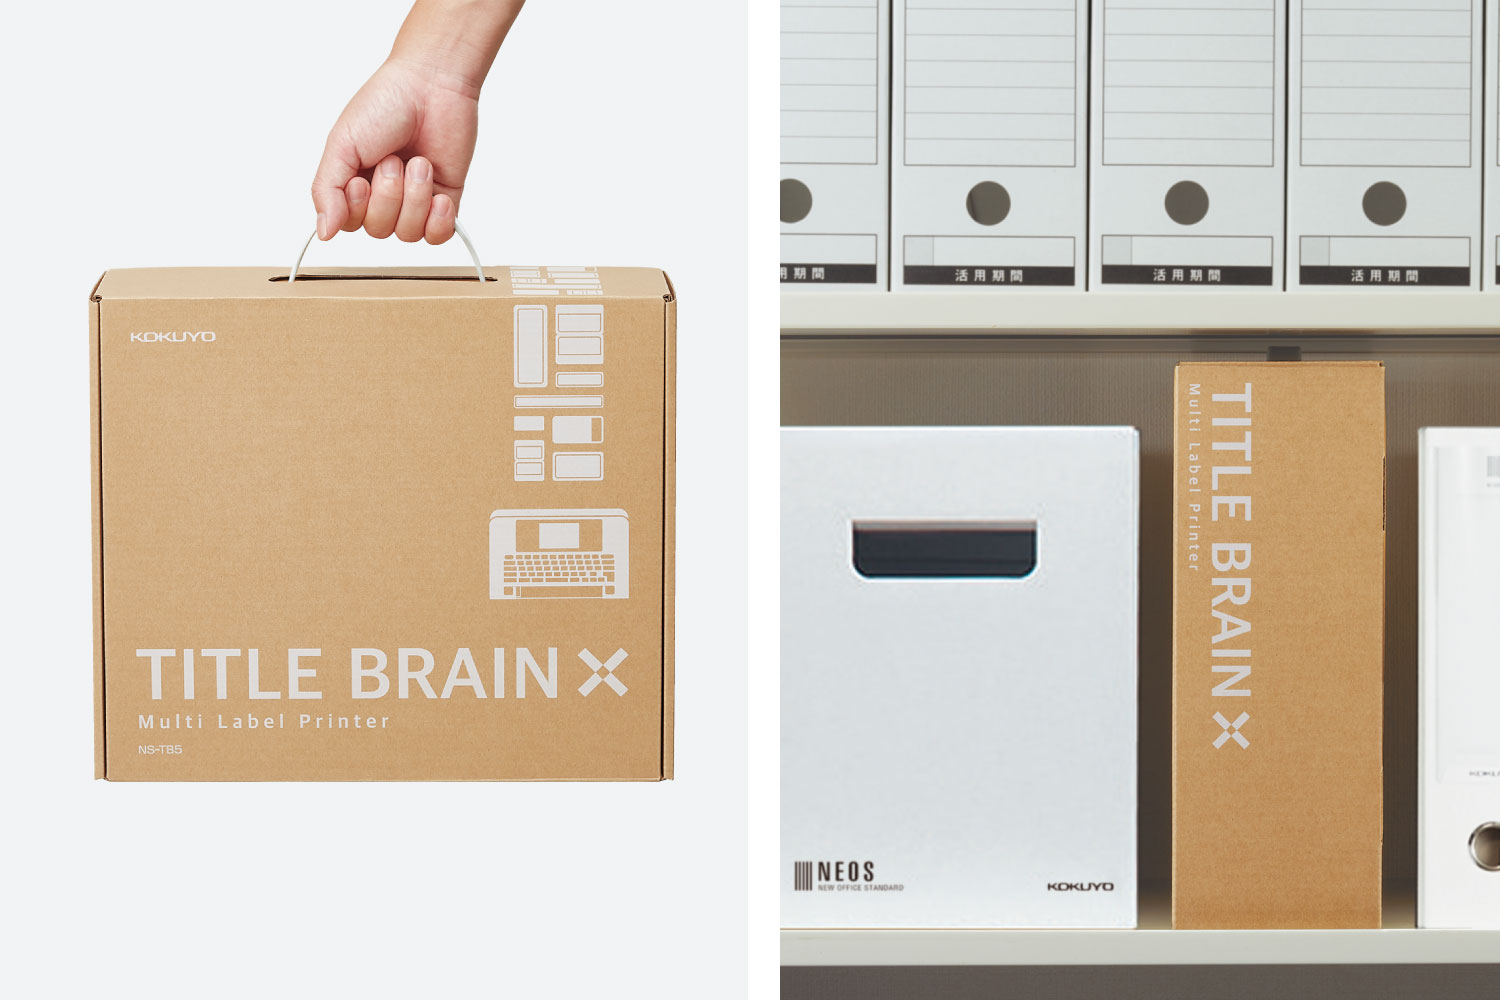 TITLE BRAIN X / Multi Label Printer